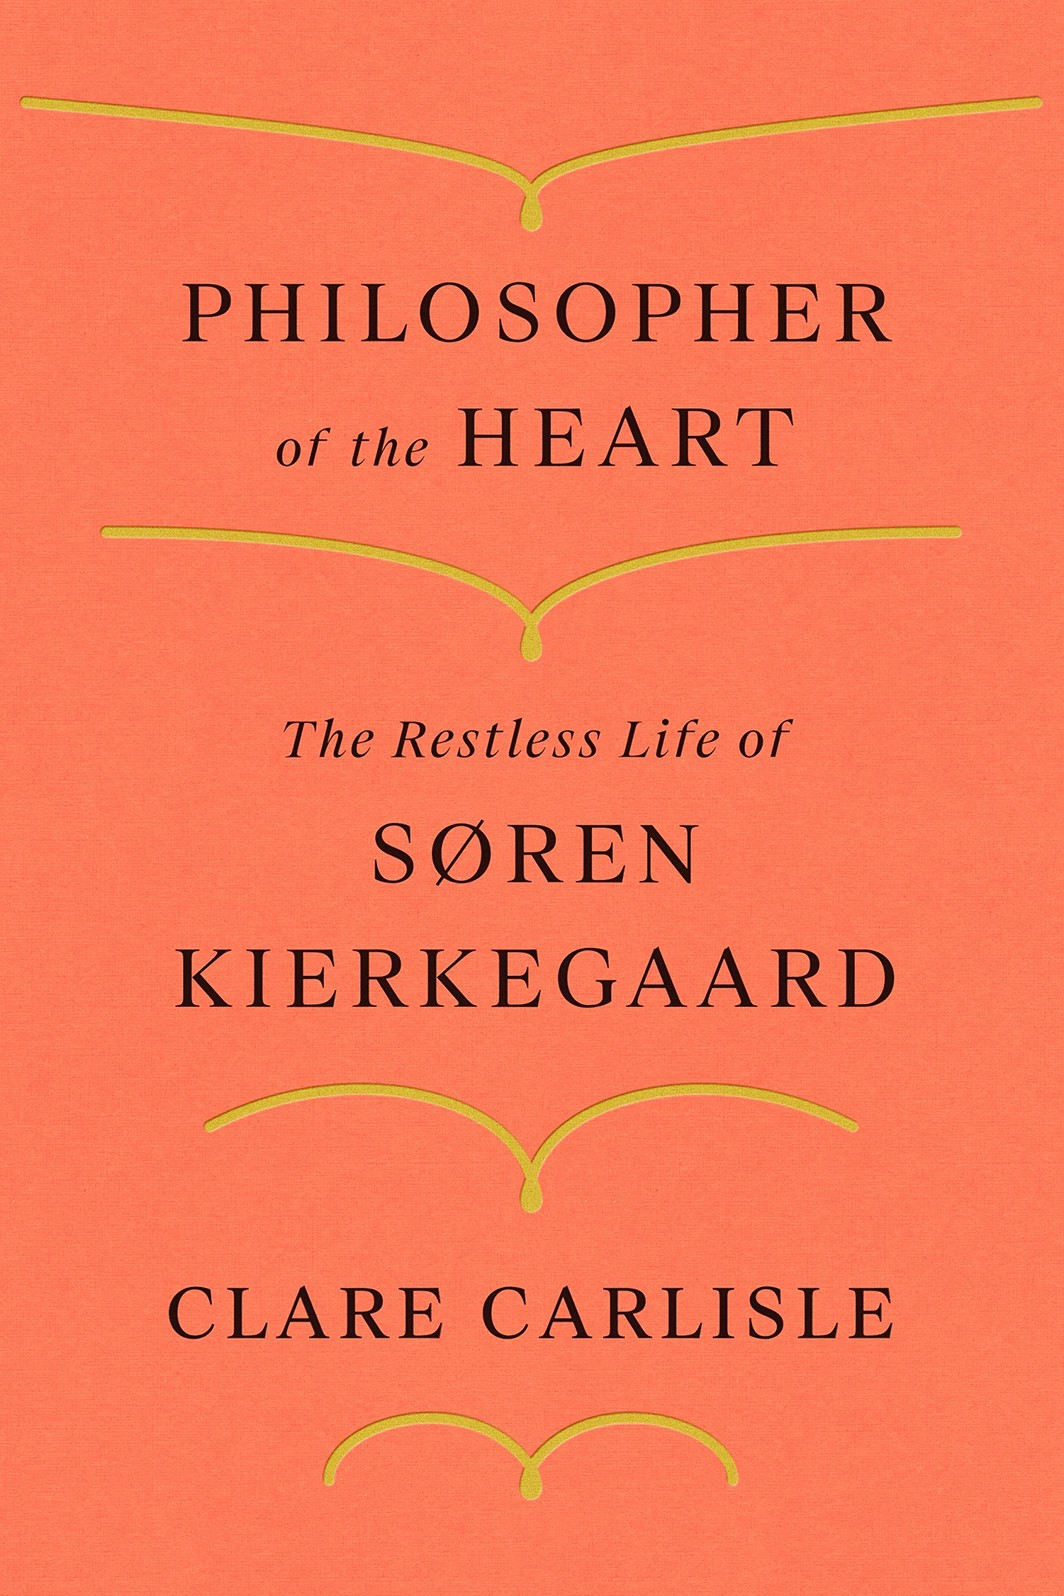 The cover of PHILOSOPHER OF THE HEART: THE RESTLESS LIFE OF SØREN KIERKEGAARD